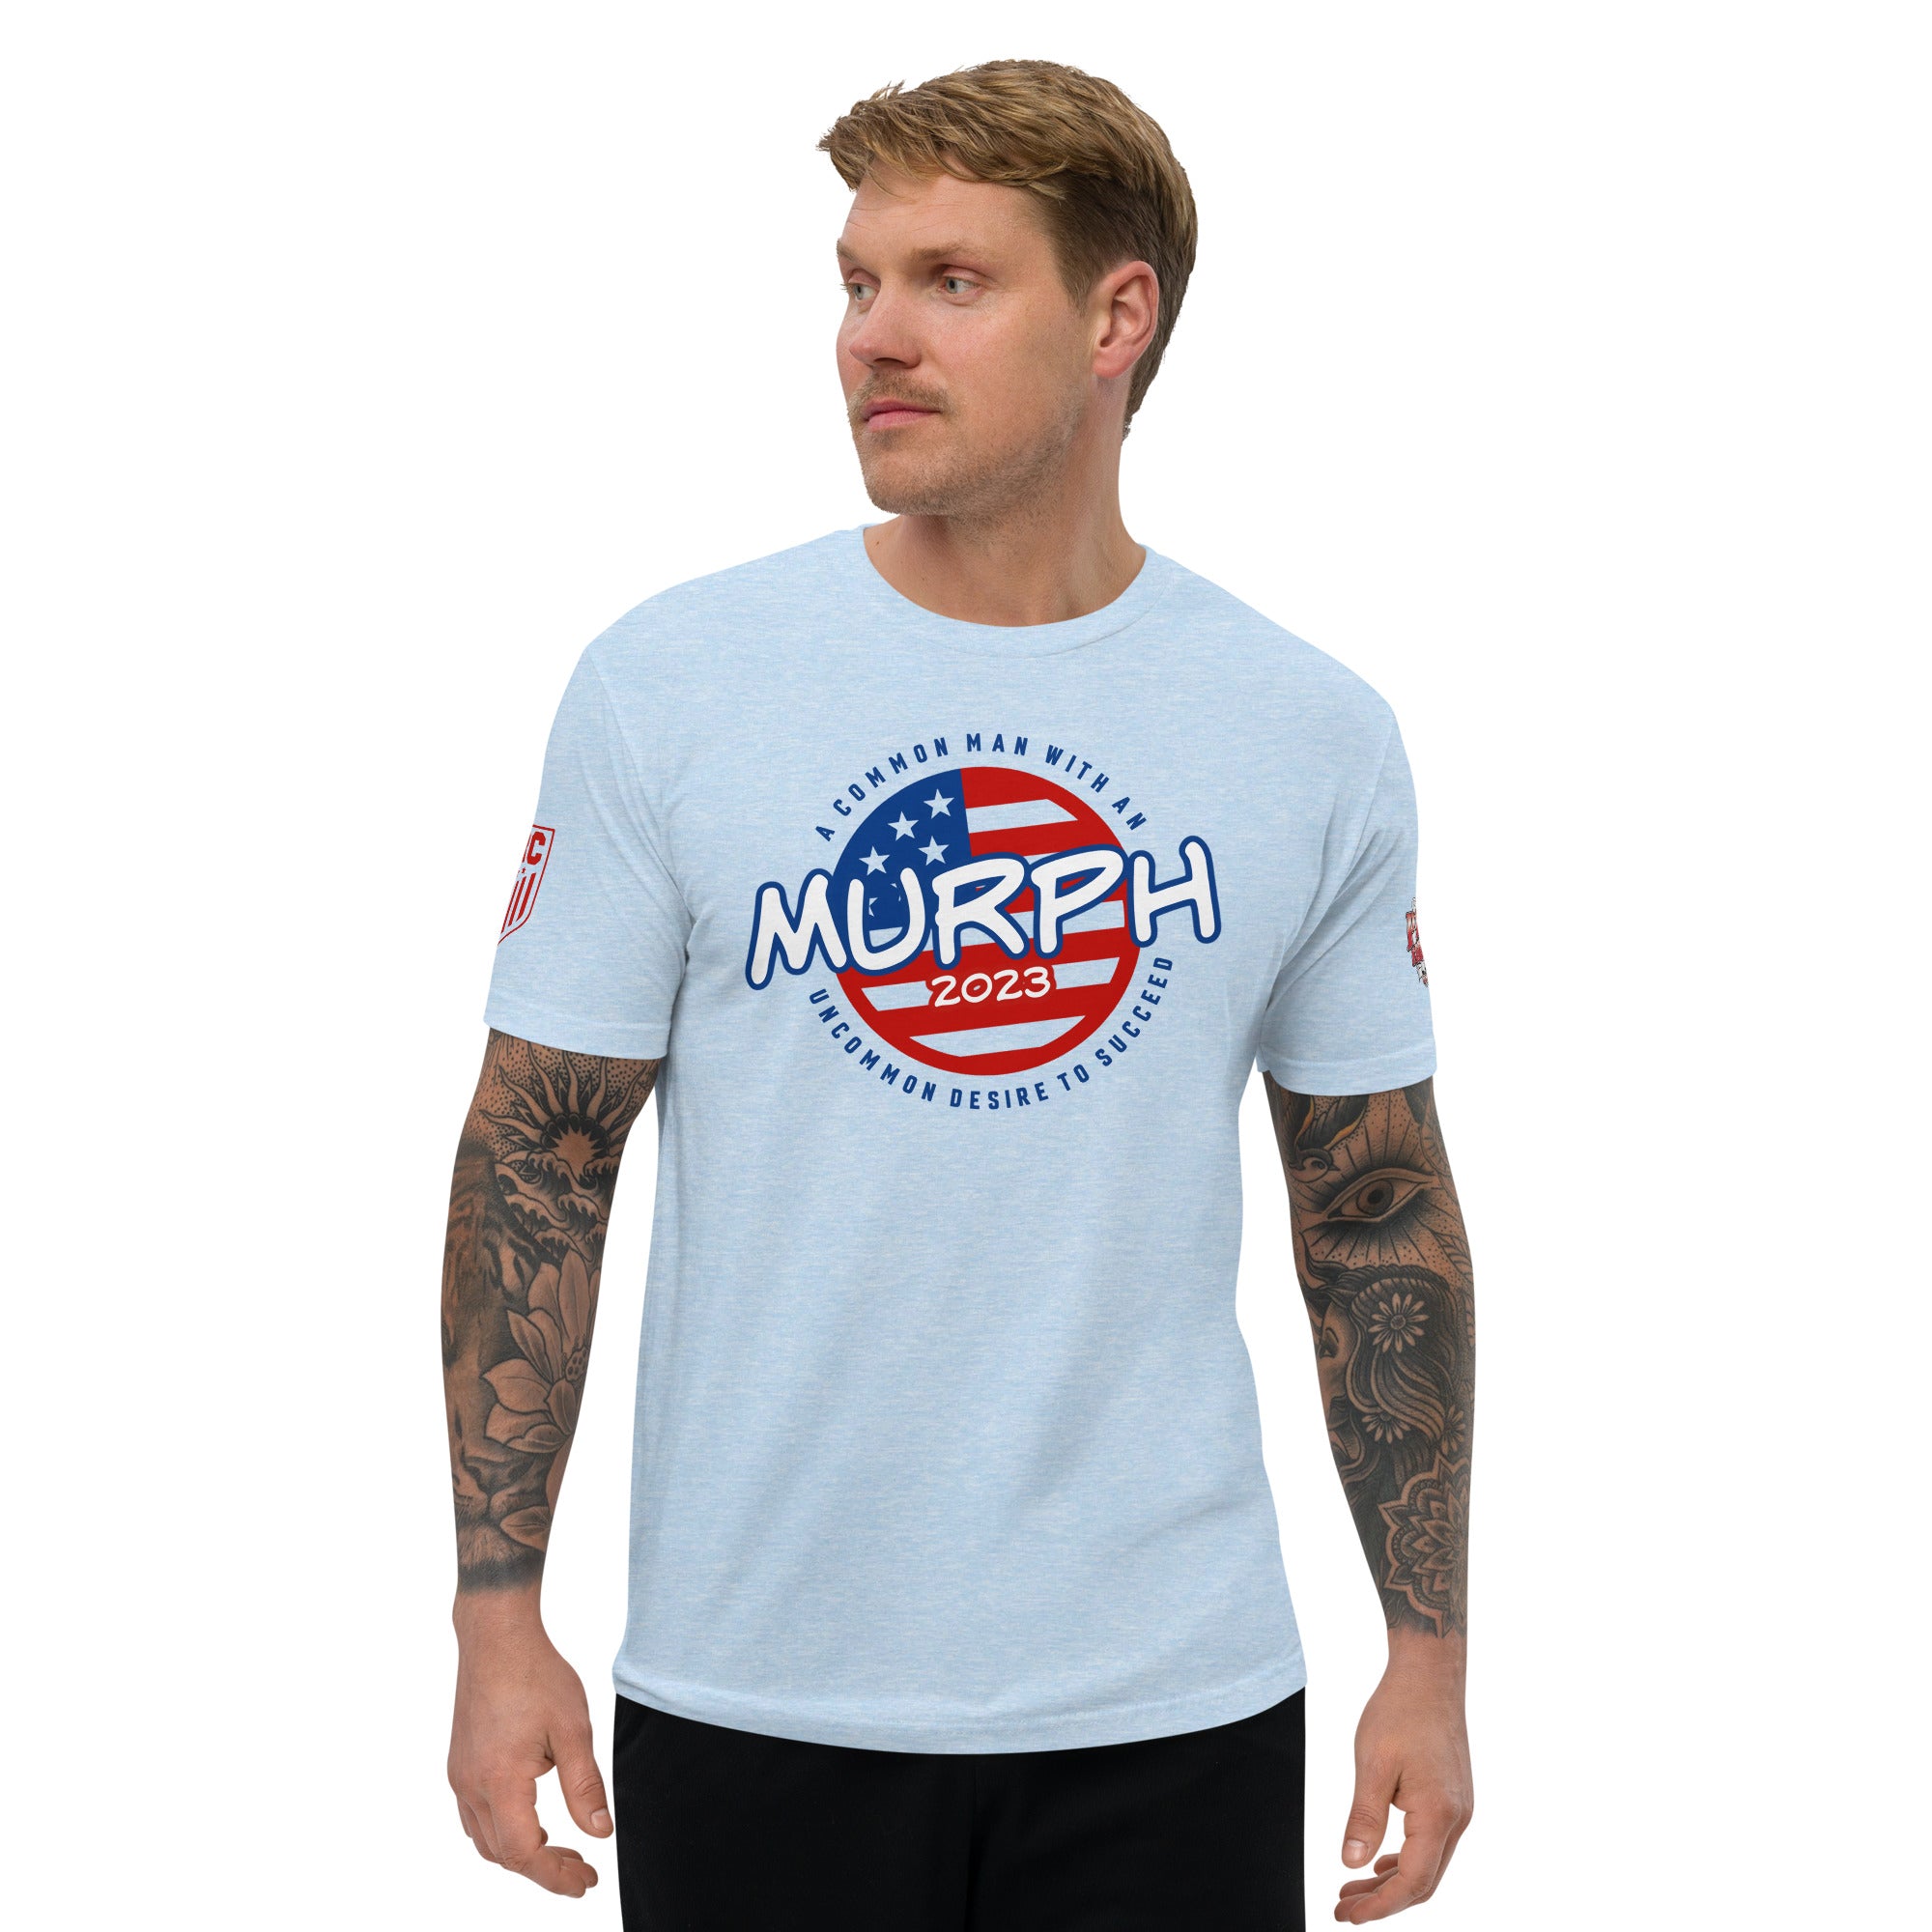 Murph 23 Short Sleeve T-shirt